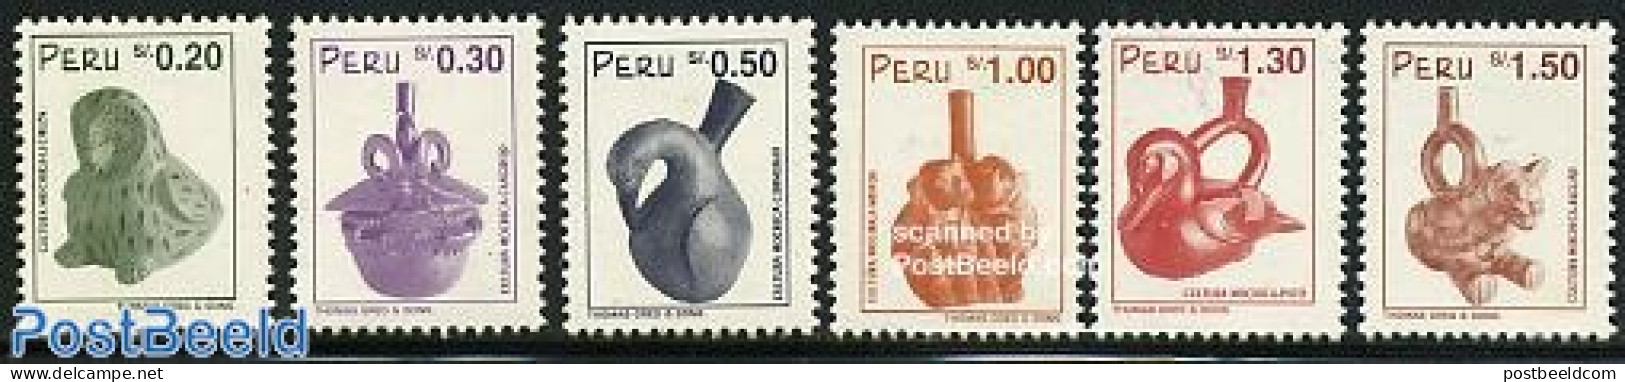 Peru 1997 Caramics 6v, Mint NH, Art - Ceramics - Handicrafts - Porcelain